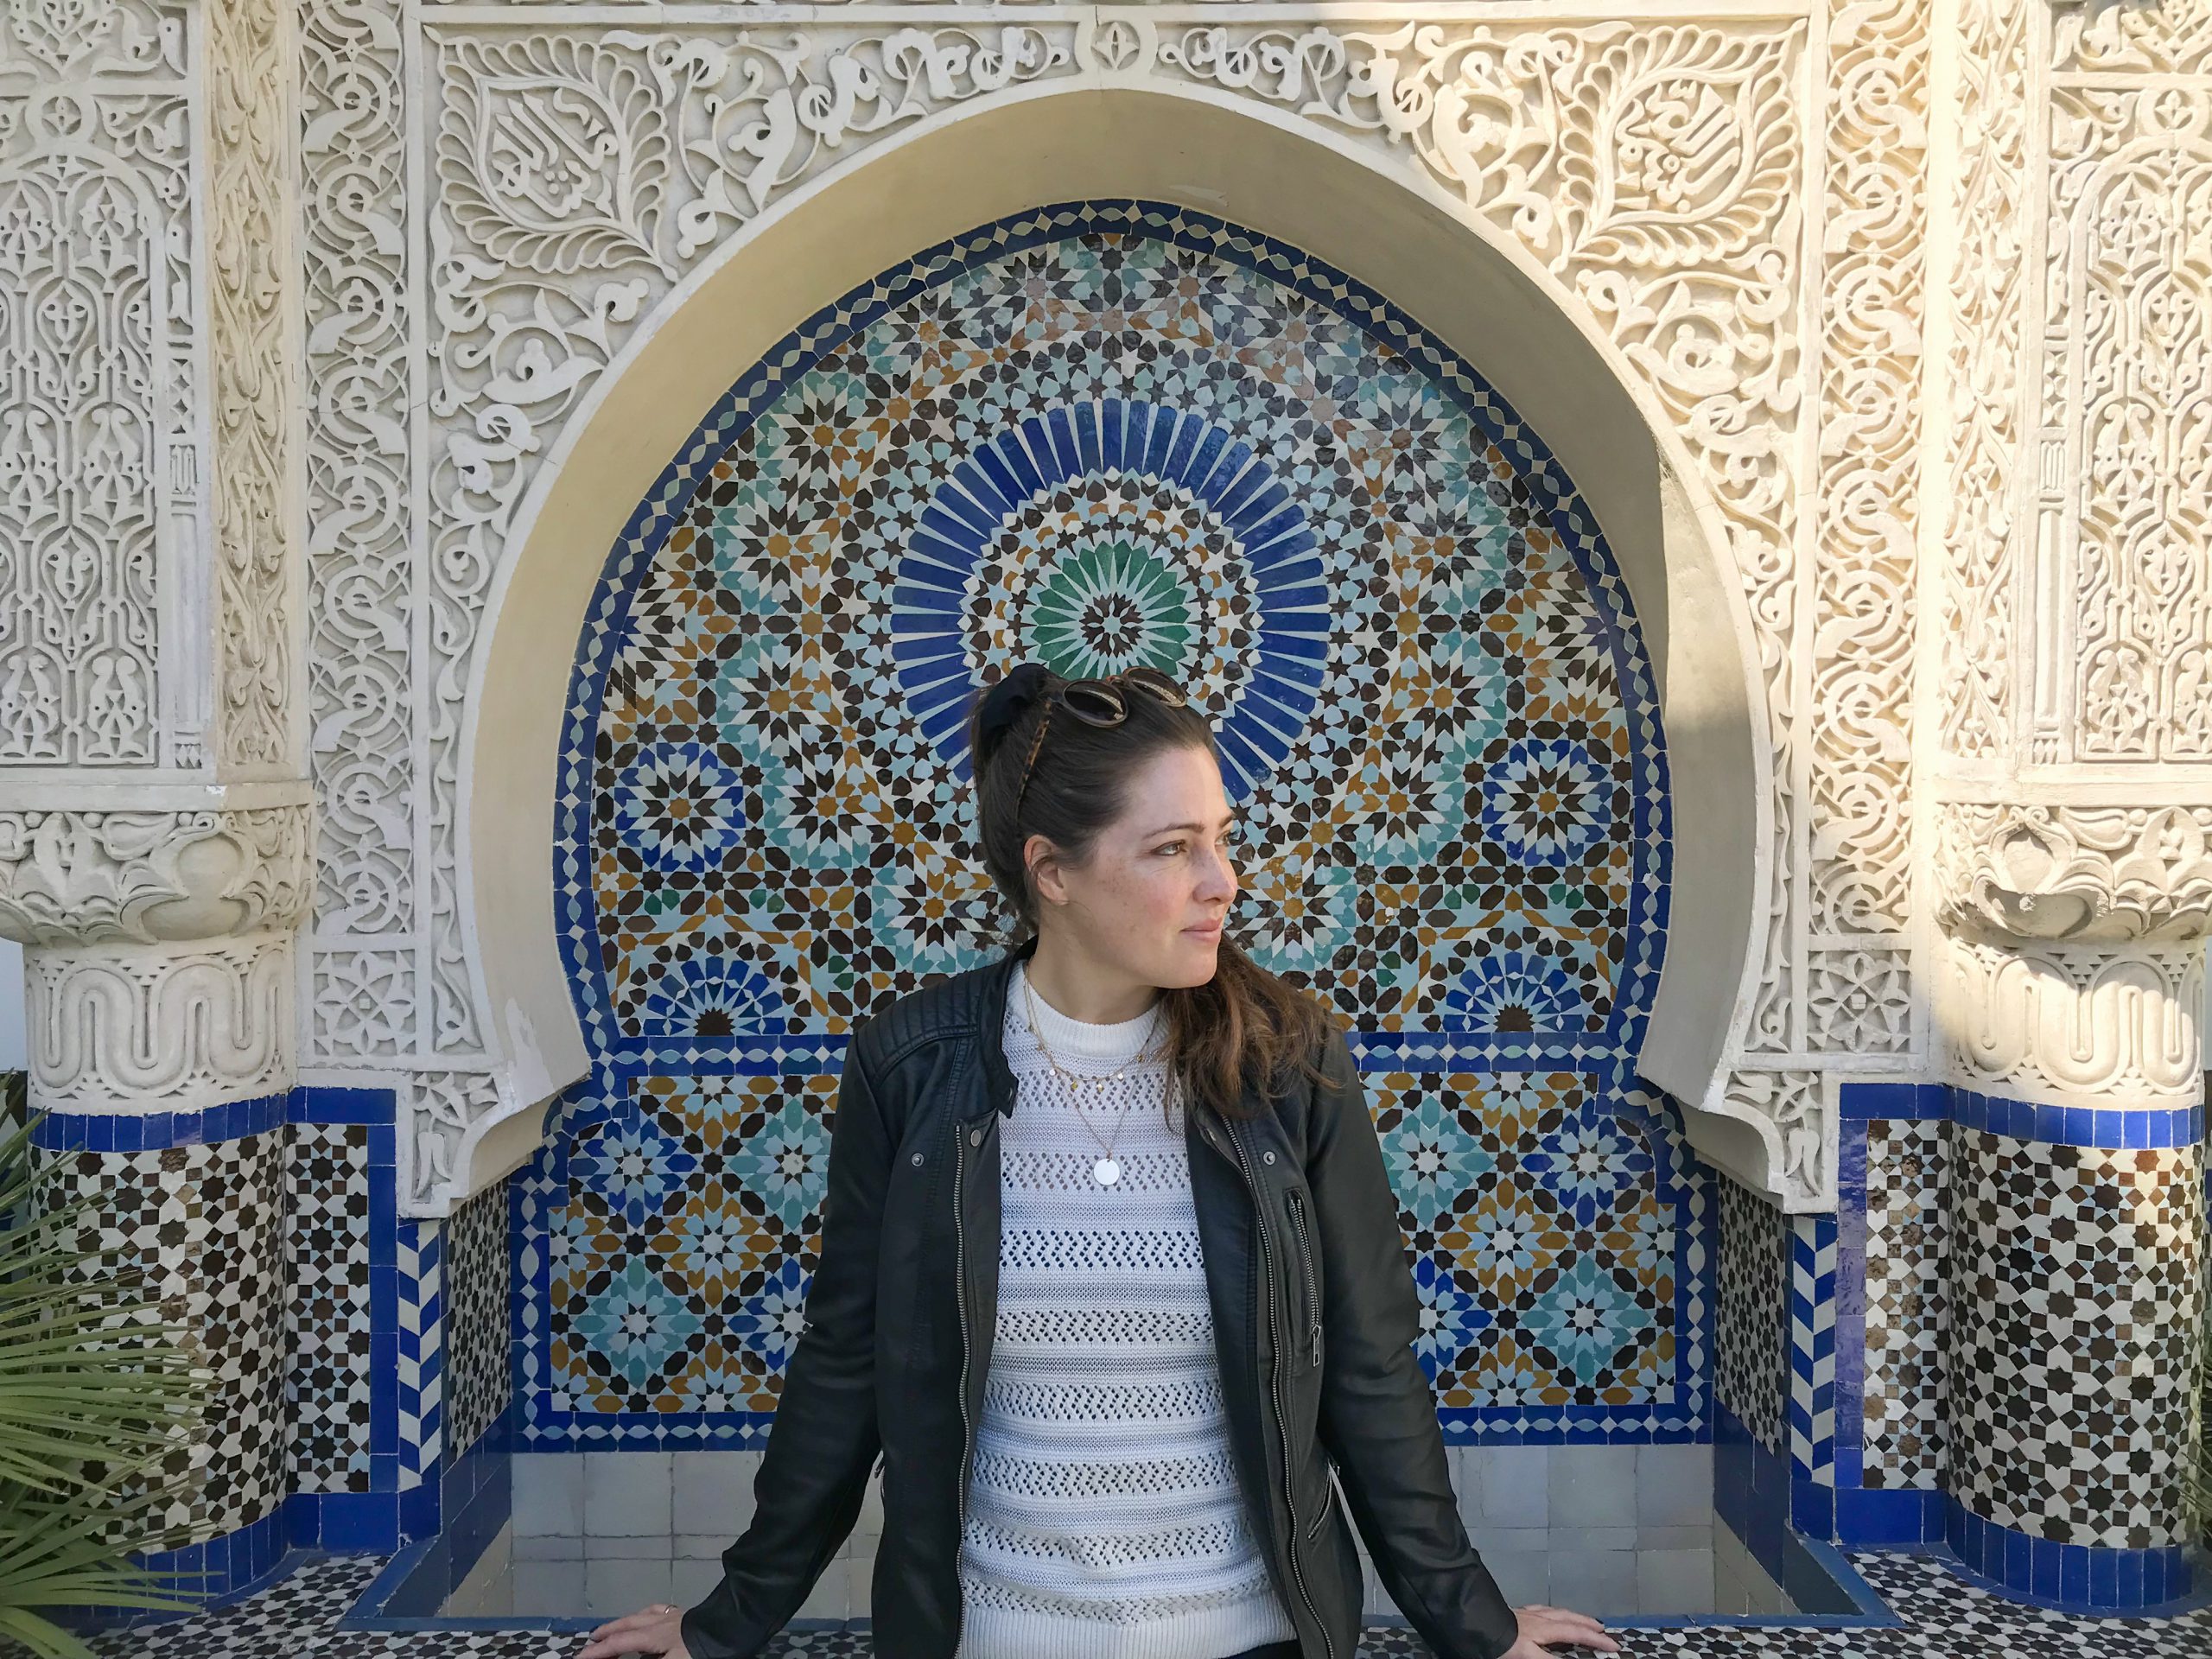 Grande mosquee de paris women instagram hotspot